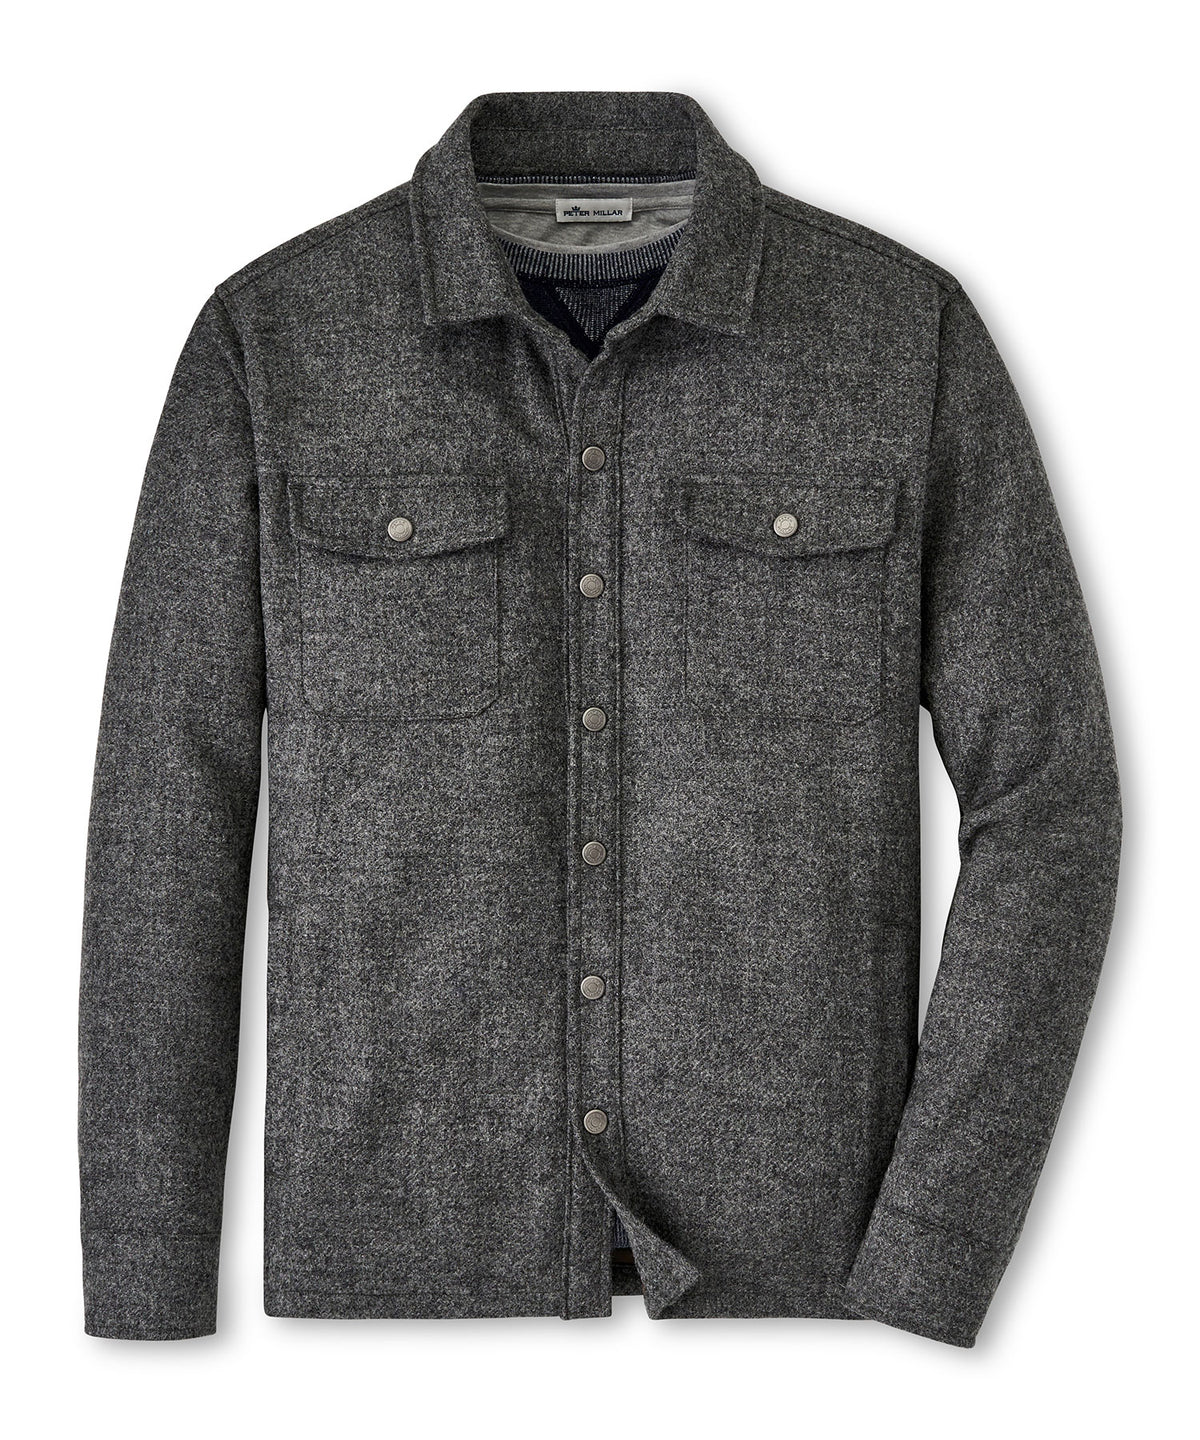 Peter Millar Yorkshire Wool Shirt Jacket